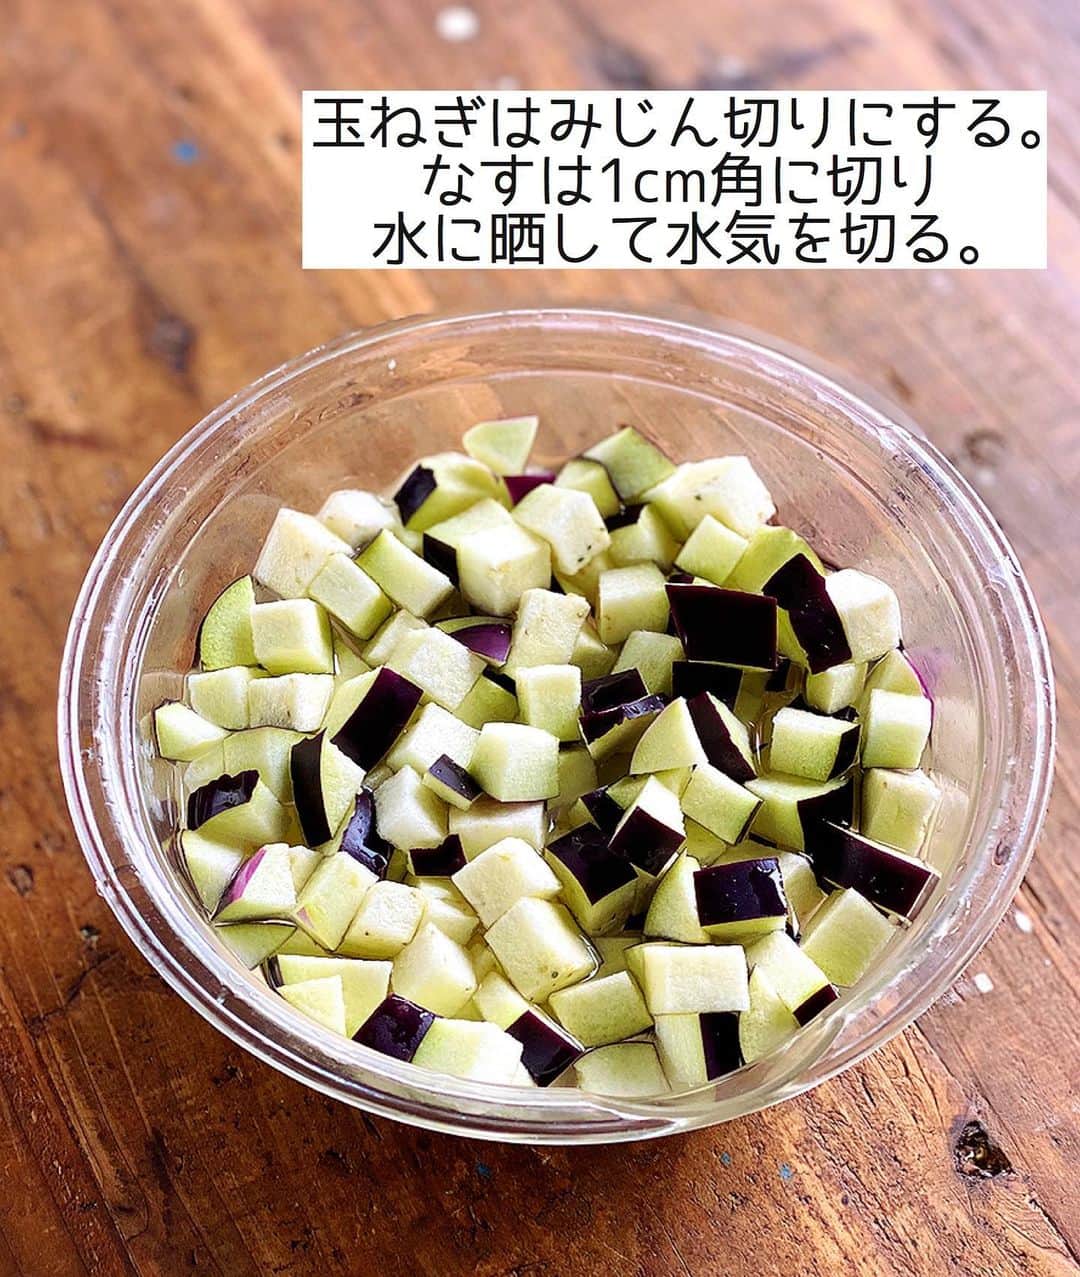 Mizuki【料理ブロガー・簡単レシピ】さんのインスタグラム写真 - (Mizuki【料理ブロガー・簡単レシピ】Instagram)「・﻿ 【レシピ】ーーーーーーーーーーー﻿ ♡レンジdeなすのキーマカレー♡﻿ ーーーーーーーーーーーーーーーー﻿ ﻿ ﻿ ﻿ おはようございます(*^^*)﻿ ﻿ 今日ご紹介させていただくのは﻿ レンジで一発！のキーマカレー☆﻿ 旬のなすをたっぷり加えて﻿ ヘルシーに仕上げました♡﻿ 辛くはないので﻿ お子さんも一緒に食べられますよ〜♩﻿ ﻿ 作り方は超簡単(*´艸`)﻿ 材料混ぜてレンチンするだけ！﻿ 火を使わずたった7分で﻿ ちゃんと美味しく仕上がります♩﻿ ランチやお弁当にも使えるので﻿ よかったらお試し下さいね(*^^*)﻿ ﻿ ﻿ ﻿ ーーーーーーーーーーーーーーーーーーーー﻿ 【2人分】﻿ 合びき肉...150g﻿ 玉ねぎ...1/4個﻿ なす...2本(150g)﻿ ●水...50ml﻿ ●ケチャップ...大2﻿ ●ウスターソース・薄力粉...各大1﻿ ●カレー粉...小2﻿ ●コンソメ・砂糖...各小1/3﻿ ごはん・(好みで)卵黄...各2人分﻿ ﻿ 1.玉ねぎはみじん切りにする。なすは1cm角に切り、水に3分晒して水気を切る。﻿ 2.耐熱ボウルにひき肉、玉ねぎ、●を入れて菜箸で混ぜる。なすをのせてふんわりラップし、600Wのレンジで7分加熱する。﻿ 3.よく混ぜてごはんにかけ、卵黄をのせる。﻿ ーーーーーーーーーーーーーーーーーーーー﻿ ﻿ ﻿ ﻿ 《ポイント》﻿ ♦︎約20cmの耐熱ボウルを使用しています♩﻿ ♦︎合挽き肉の代わりに豚ひき肉や鶏ひき肉でも作れます♩﻿ ♦︎辛さはカレー粉の量で調節できます♩レシピ分量だと辛くはありません♩﻿ ﻿ ﻿ ﻿ ﻿ ﻿ ﻿ ＿＿＿＿＿＿＿＿＿＿＿＿＿＿＿＿＿﻿ 🎀6刷重版しました🎀﻿ 混ぜて焼くだけ。はじめてでも失敗しない！﻿ 【#ホットケーキミックスのお菓子 】﻿ ﻿ 一冊まるっとホケミスイーツ♩﻿ 普段のおやつから﻿ 特別な日にも使えるレシピを﻿ この一冊に詰め込みました(*^^*)﻿ ホットケーキミックスを使えば﻿ 簡単に本格的なお菓子が作れますよ♡﻿ ＿＿＿＿＿＿＿＿＿＿＿＿＿＿＿＿＿﻿ ﻿ ﻿ ﻿ ＿＿＿＿＿＿＿＿＿＿＿＿＿＿＿＿＿＿＿﻿ 📕6刷重版しました📕﻿ 簡単・時短！ 毎日のごはんがラクになる﻿ ✨🦋 【 #Mizukiの今どき和食 】🦋✨﻿ ＿＿＿＿＿＿＿＿＿＿＿＿＿＿＿＿＿＿＿﻿ なるべく少ない材料で﻿ 手間も時間も省きながら﻿ 簡単にできるおいしい和食レシピ♩﻿ 簡単に失敗なくマスターできる一冊で﻿ もっと気軽に、カジュアルに﻿ 和食を楽しんで下さいね(*^^*)﻿ ＿＿＿＿＿＿＿＿＿＿＿＿＿＿＿＿＿＿＿﻿ ﻿ ⭐️ストーリー、ハイライト、プロフ画面に﻿ 本のURLを貼らせていただいております♩﻿ →(@mizuki_31cafe )﻿ ﻿ ﻿ ﻿ ﻿ ﻿ #なす#ひき肉#レンジ#キーマカレー#カレー#7分#お弁当#Mizuki#簡単レシピ#時短レシピ#節約レシピ#料理#レシピ#フーディーテーブル#マカロニメイト#おうちごはん#デリスタグラマー#料理好きな人と繋がりたい#おうちごはん#写真好きな人と繋がりたい#お菓子作りならコッタlover#foodpic#cooking#recipe#lin_stagrammer#foodporn#yummy#レンジキーマカレーm」7月19日 7時09分 - mizuki_31cafe